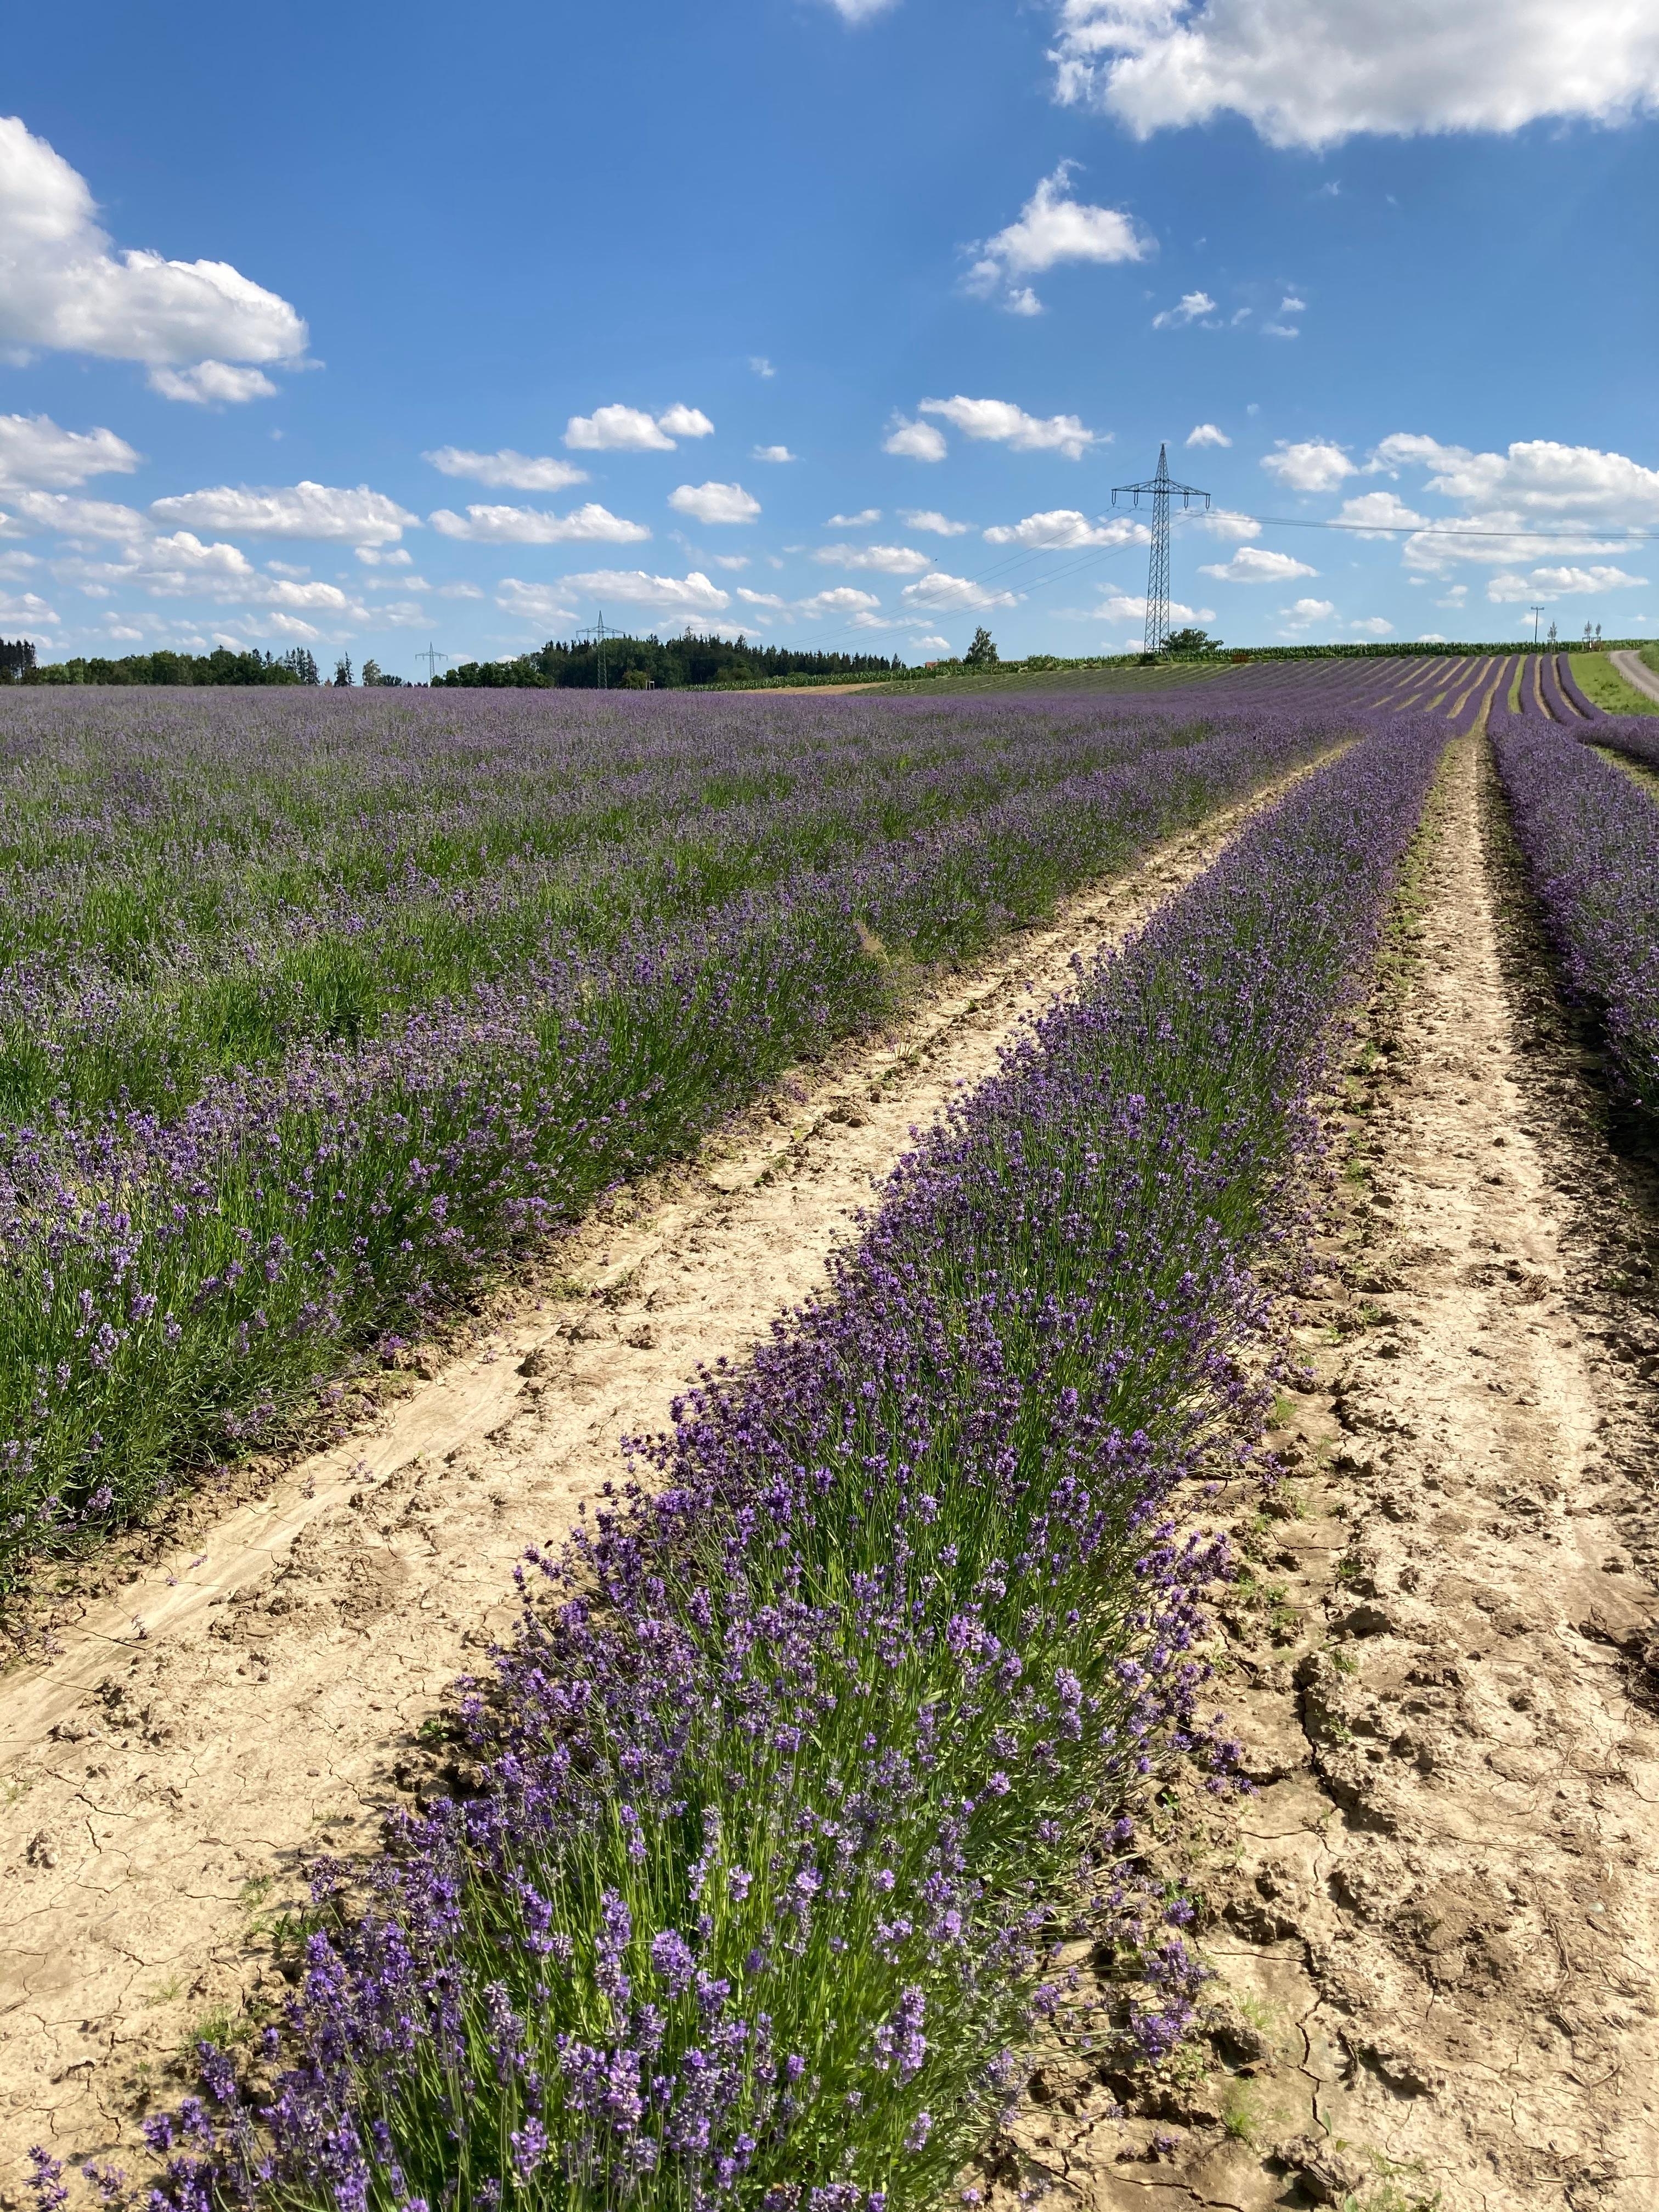 Lavendelfelder gibt es nicht nur in der Provence sondern auch zu Hause in Bayern 💙 #urlaubzuhause #lavendel #dieserduft